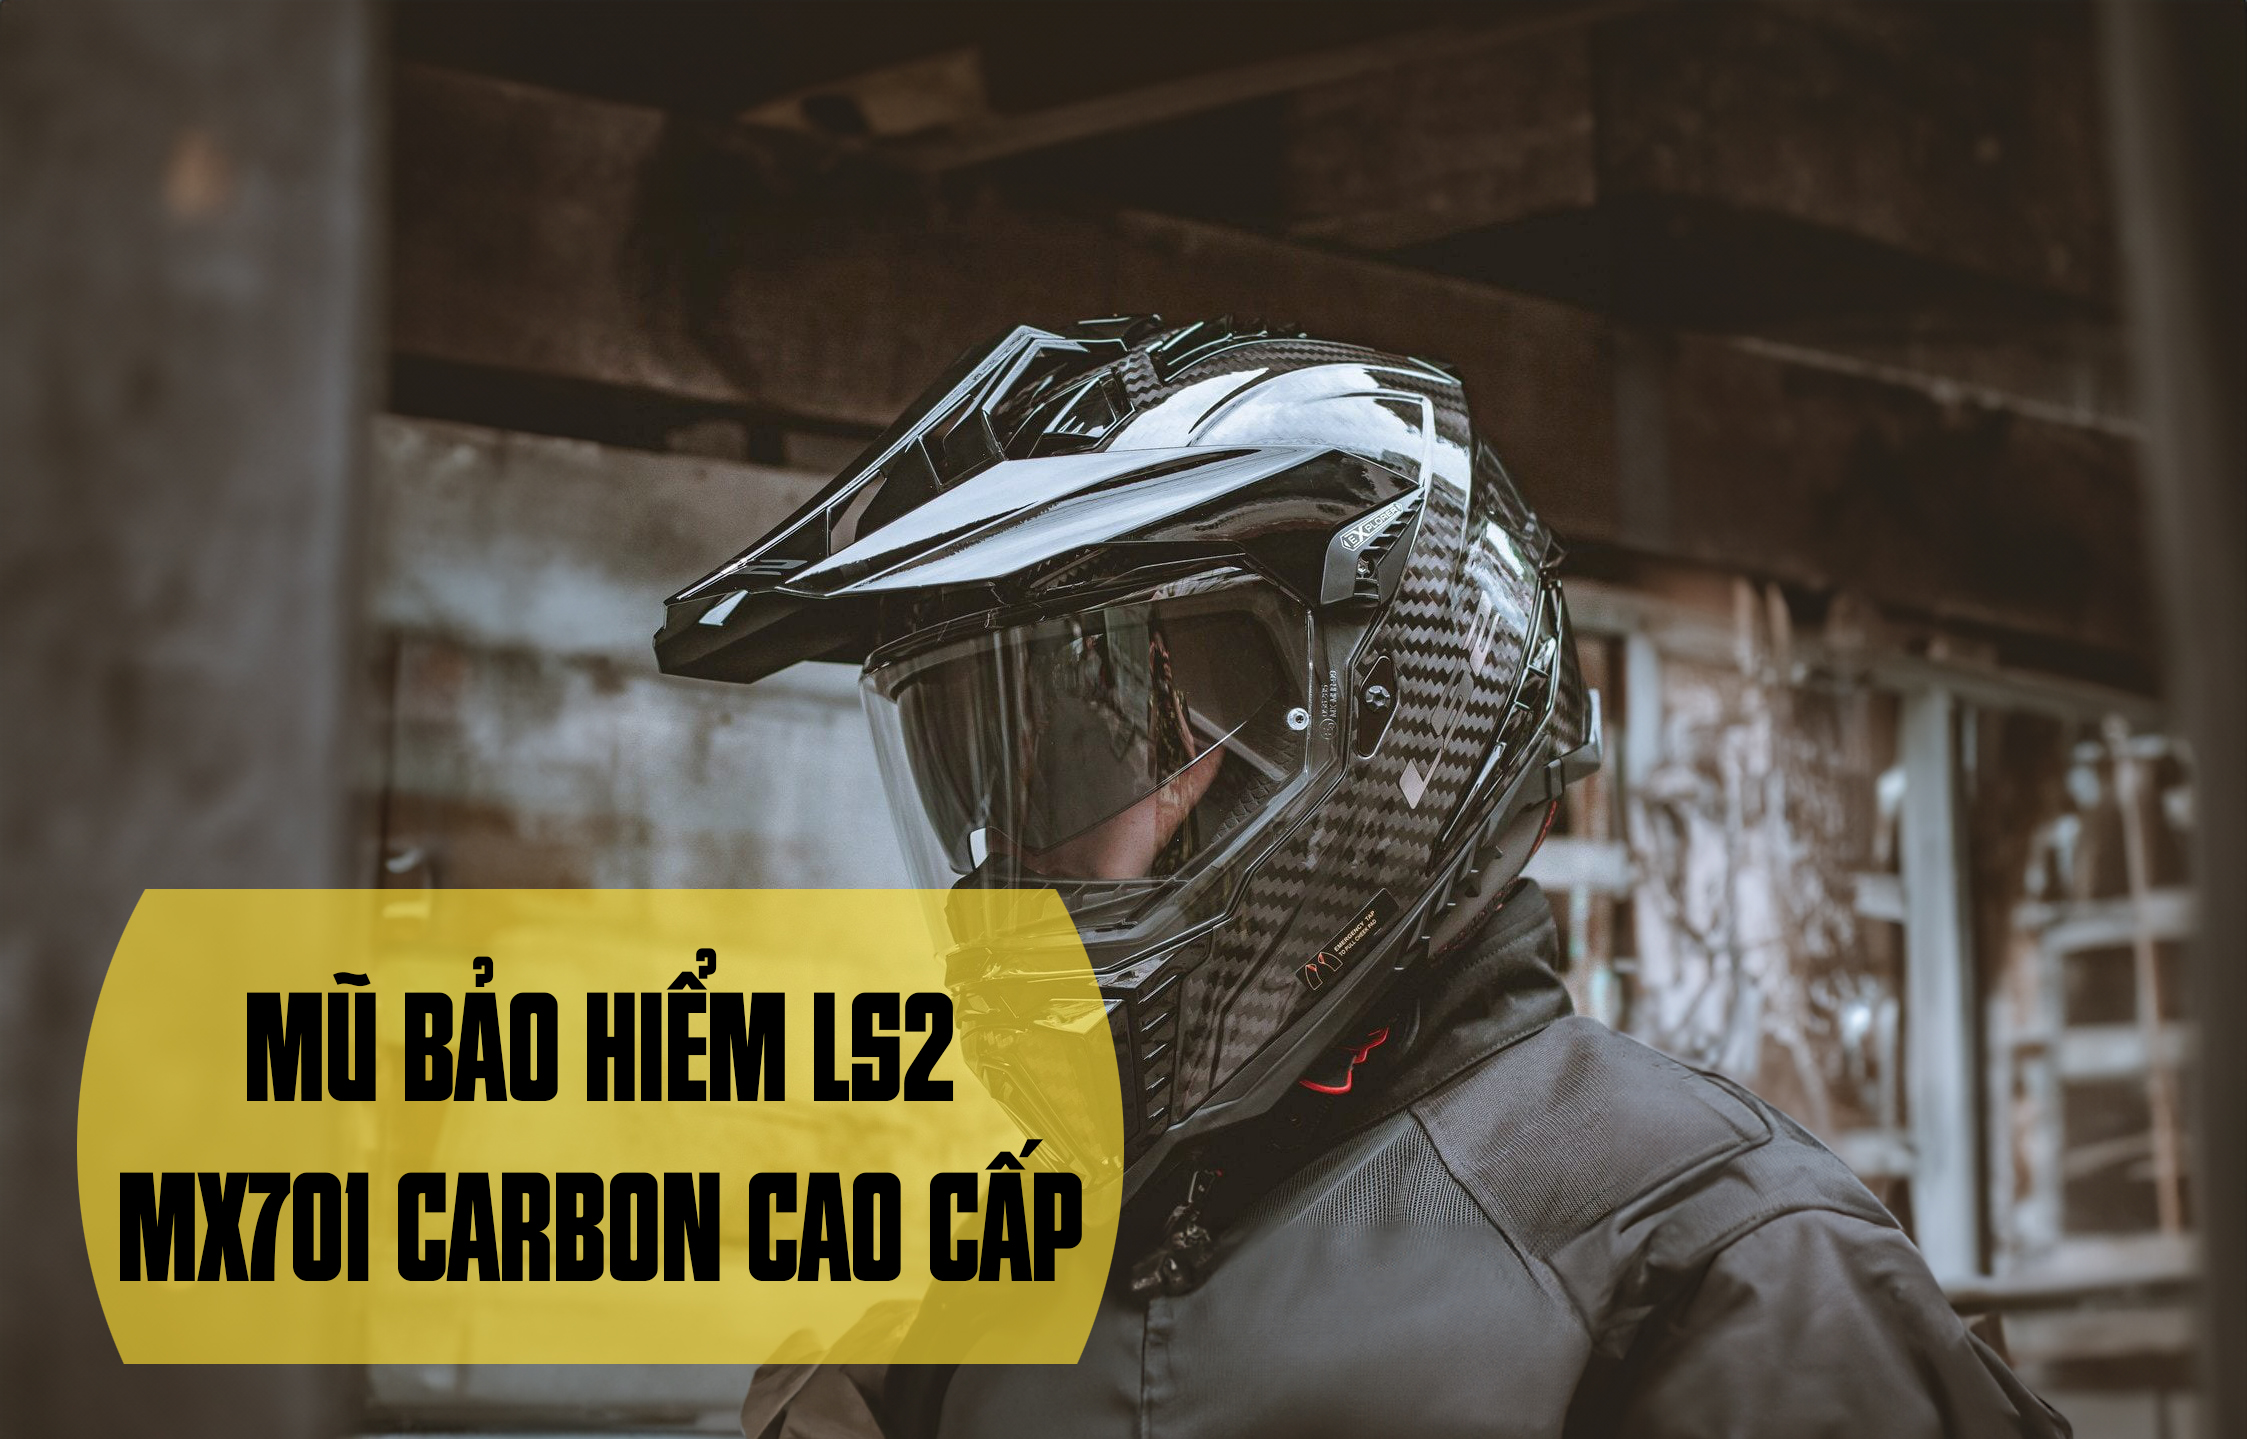 Mũ bảo hiểm LS2 MX701 Carbon cao cấp và công nghệ đỉnh cao!